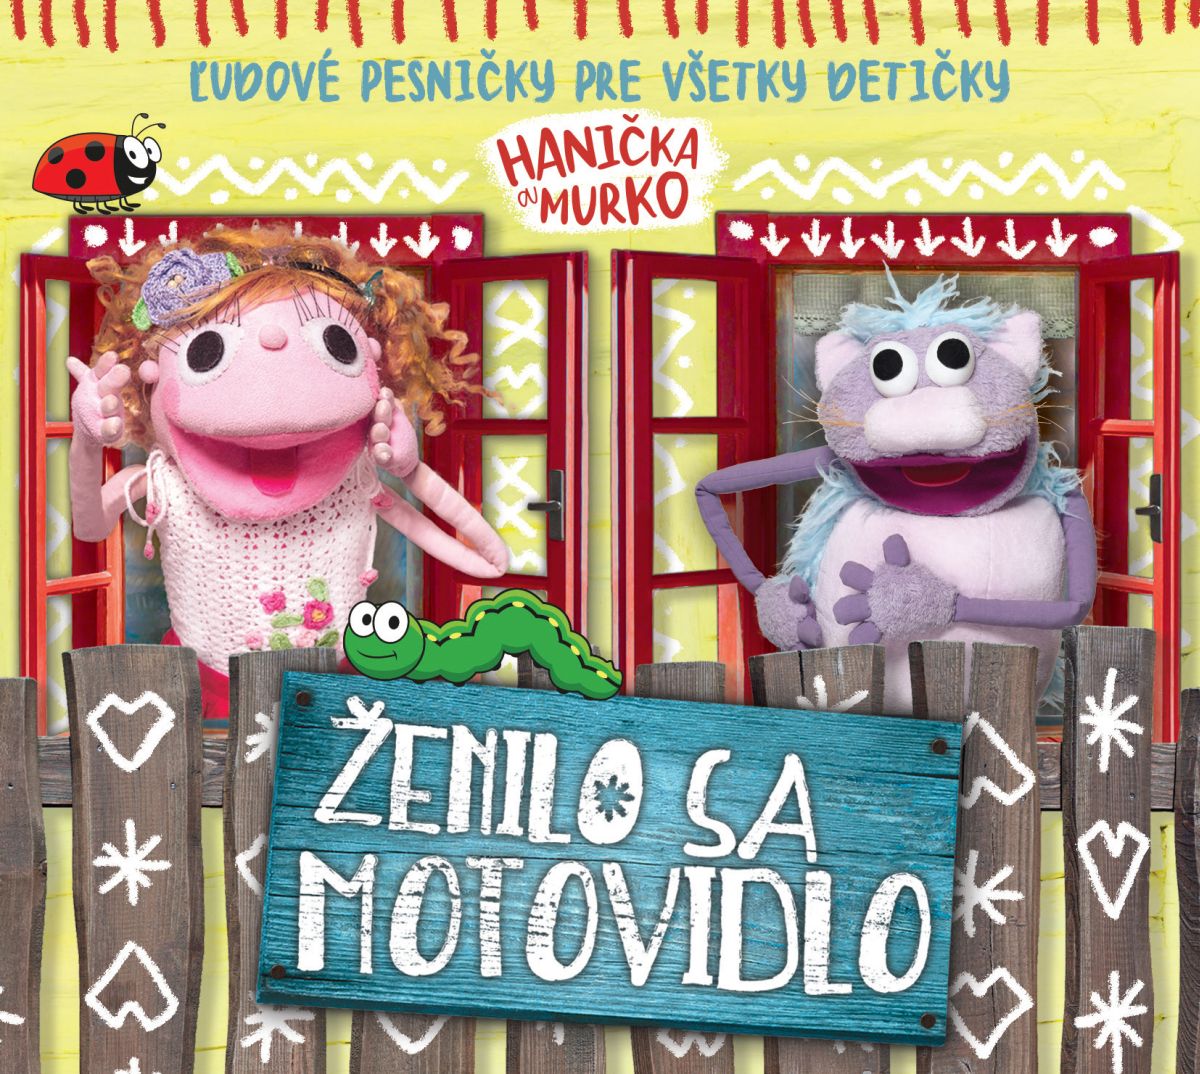 CD Shop - HANICKA A MURKO ZENILO SA MOTOVIDLO